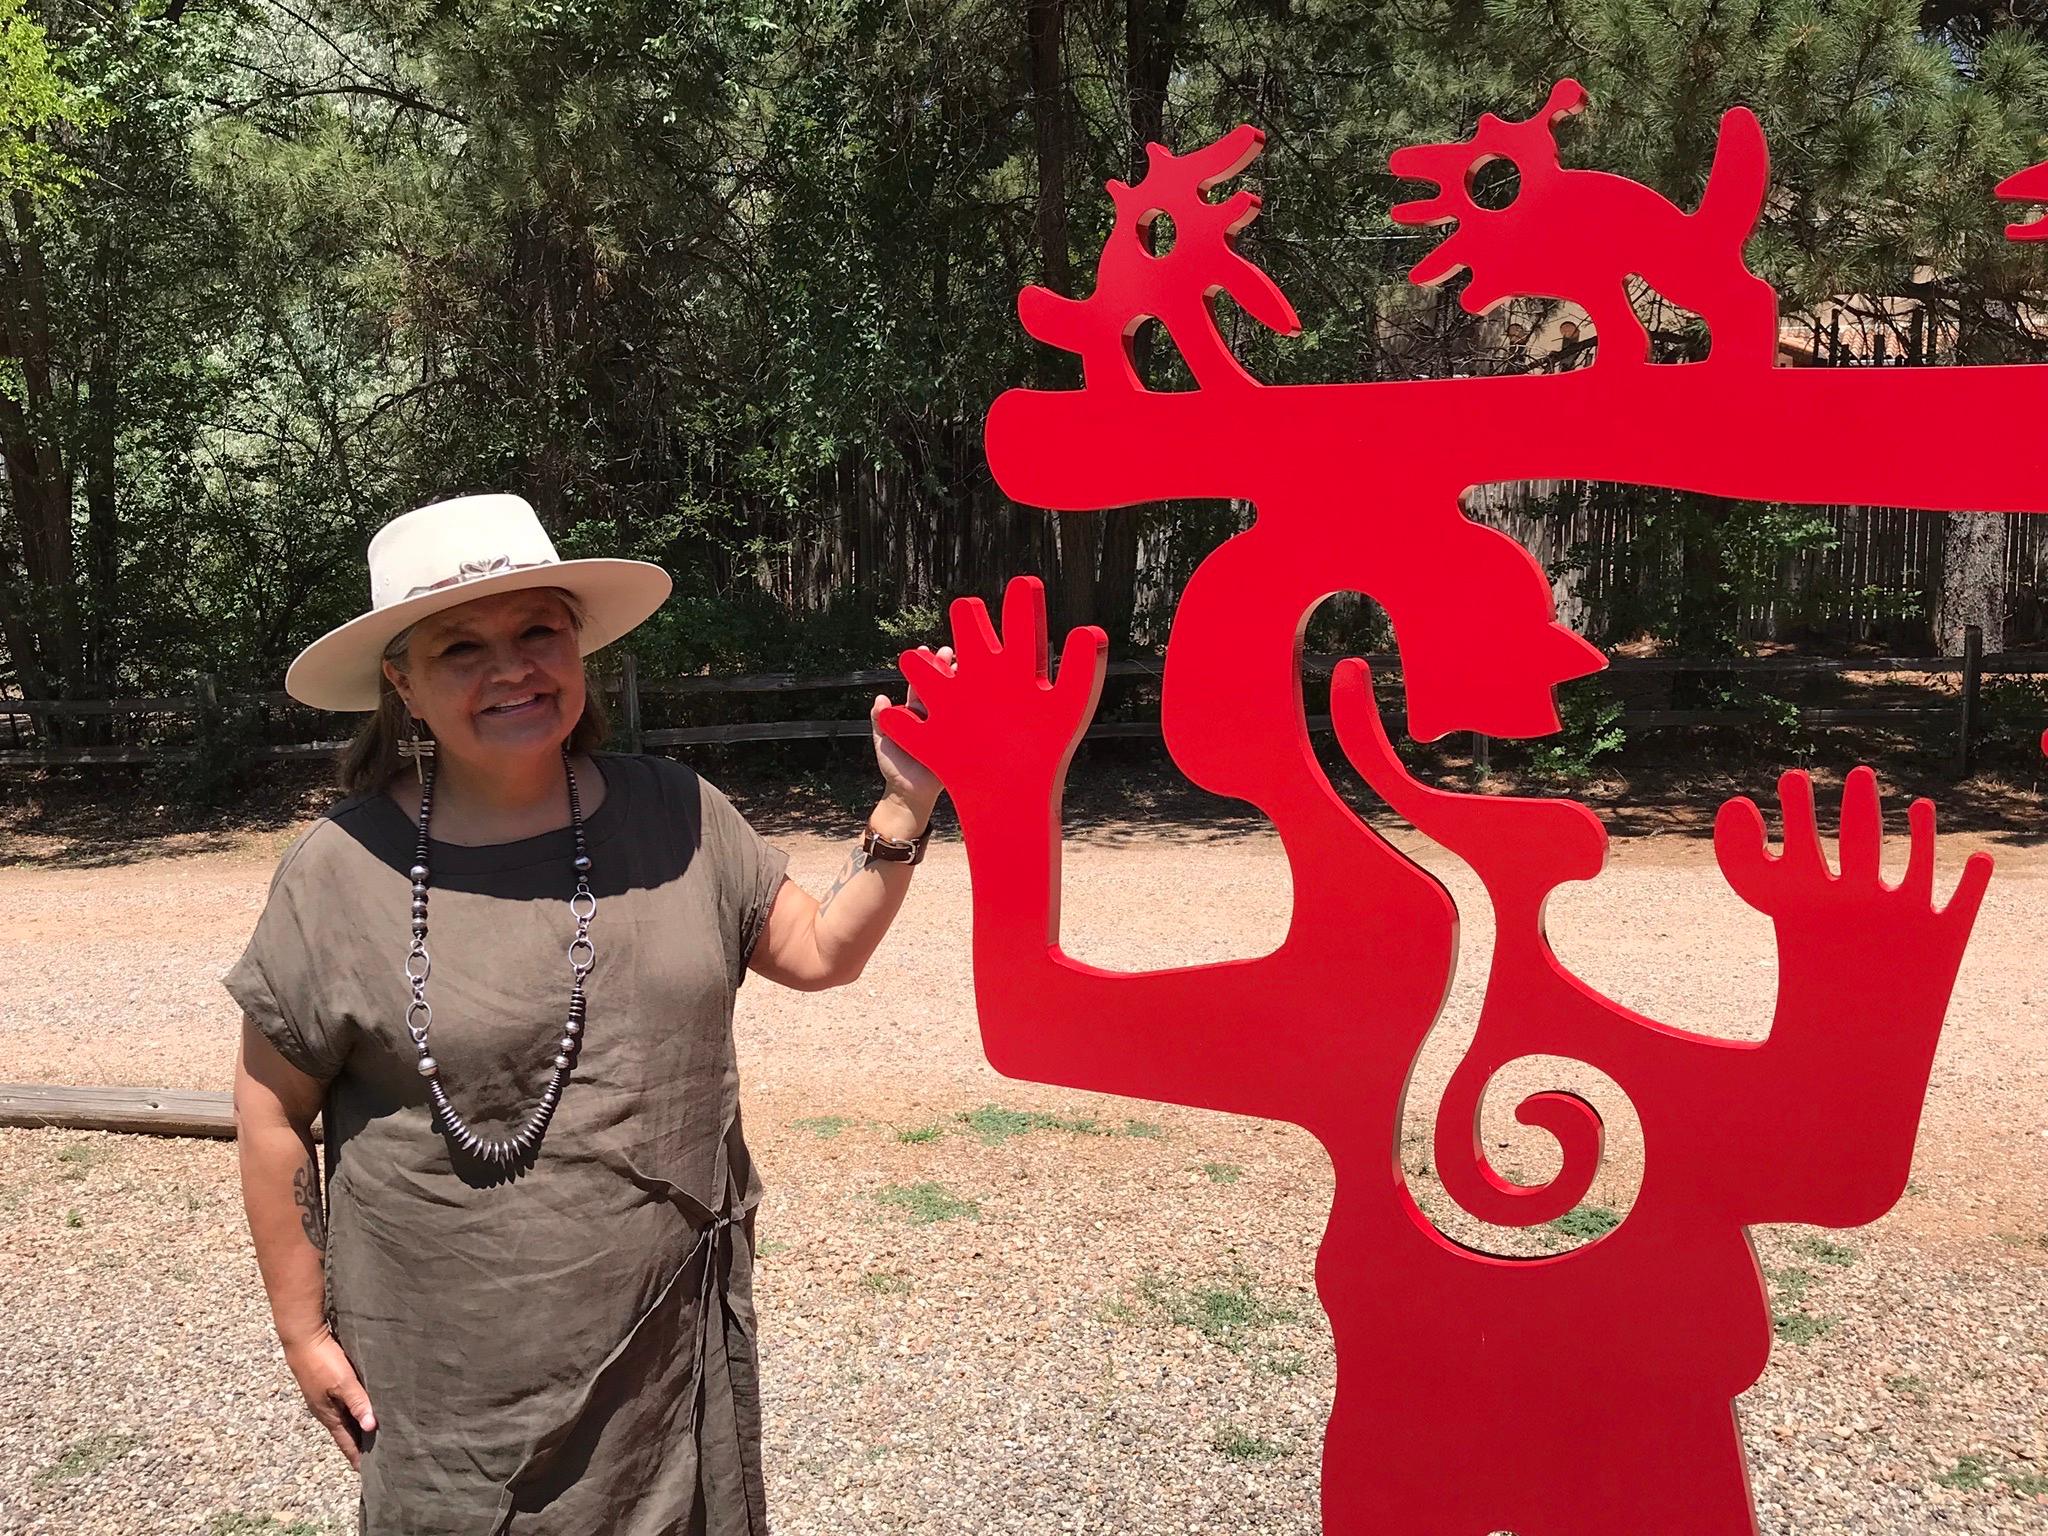 Two Minds Meeting, Melanie Yazzie large red sculpture, animals, people, Navajo

Melanie A. Yazzie 